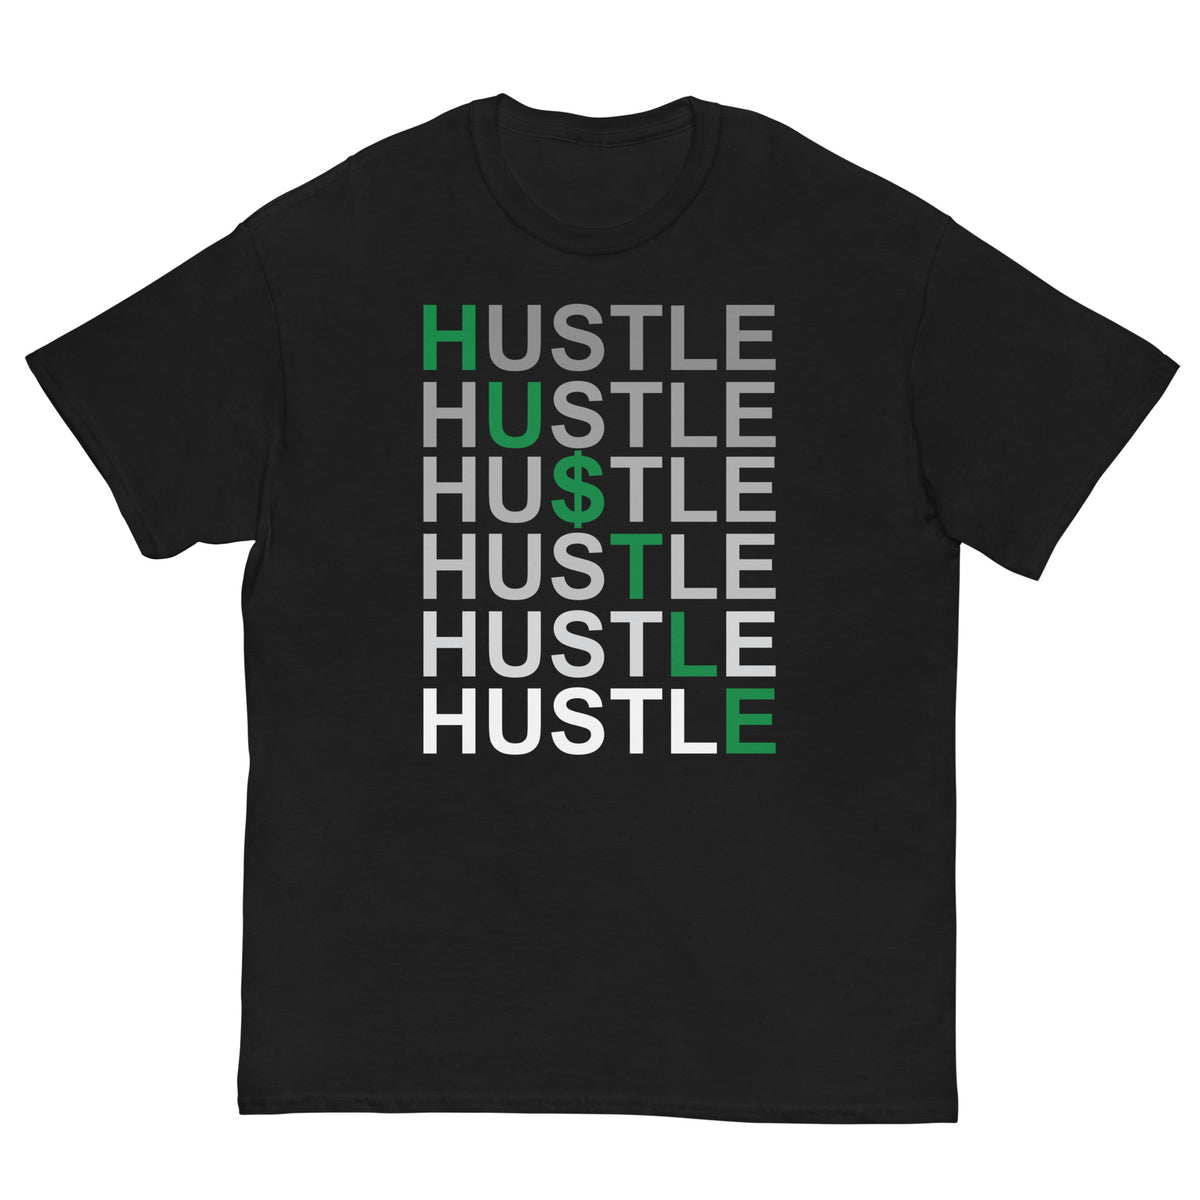 Hustle - Men's classic tee